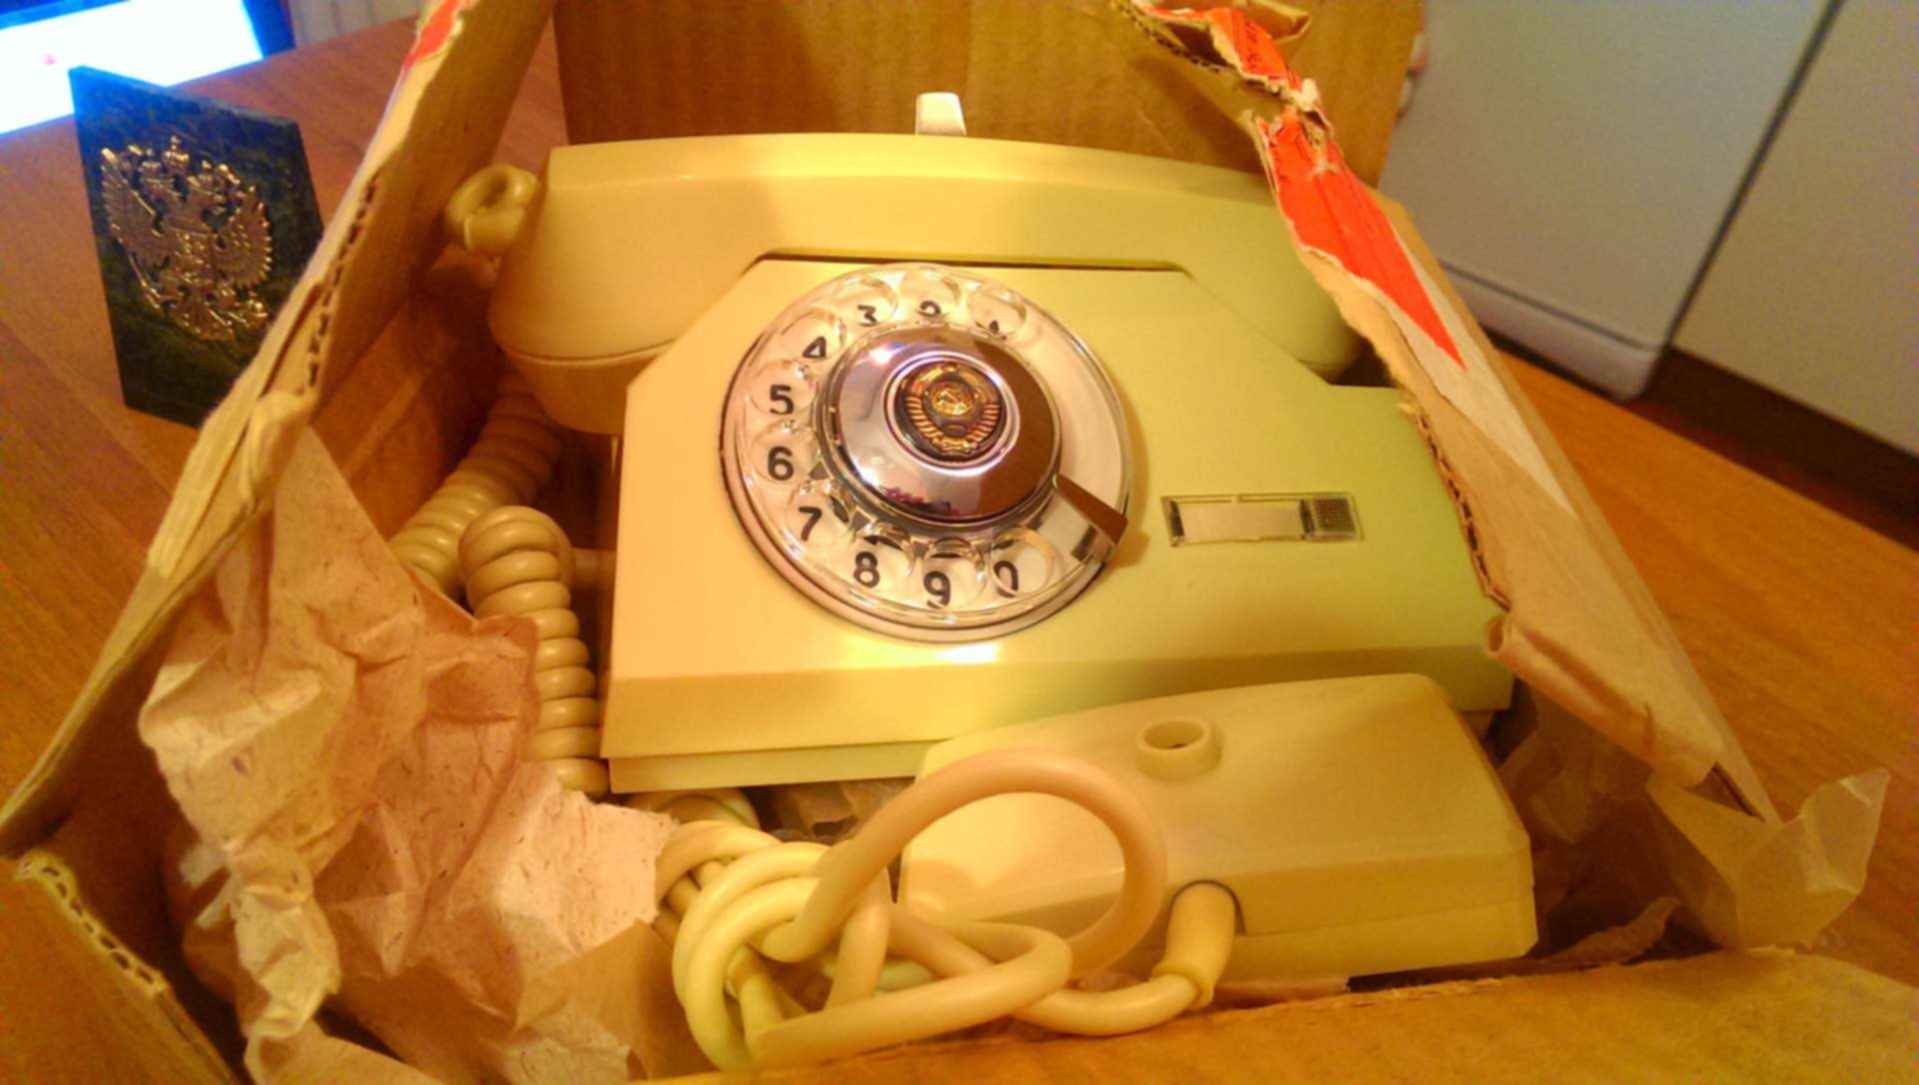 Рингтон советский телефон. Телефонный аппарат спецсвязи КГБ. Советский телефонный аппарат. Телефонный аппарат вертушка. Телефонный аппарат та-72.